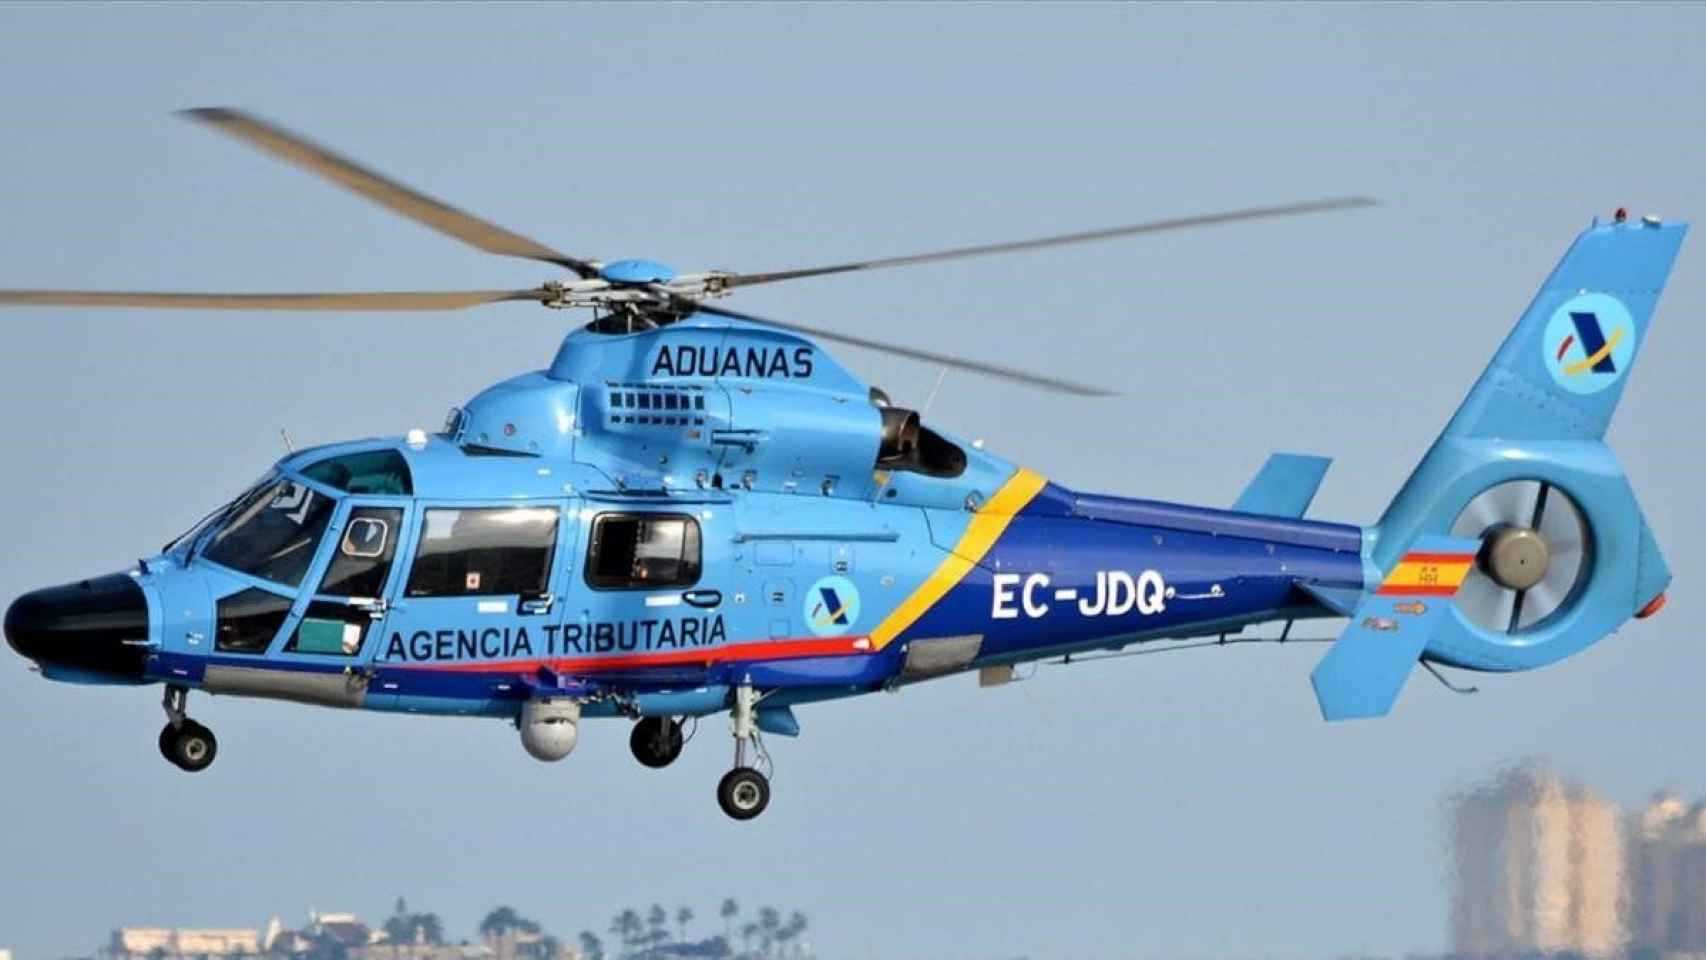 Un helicóptero AS365 N3 Dauphin de Vigilancia Aduanera, igual que el accidentado.